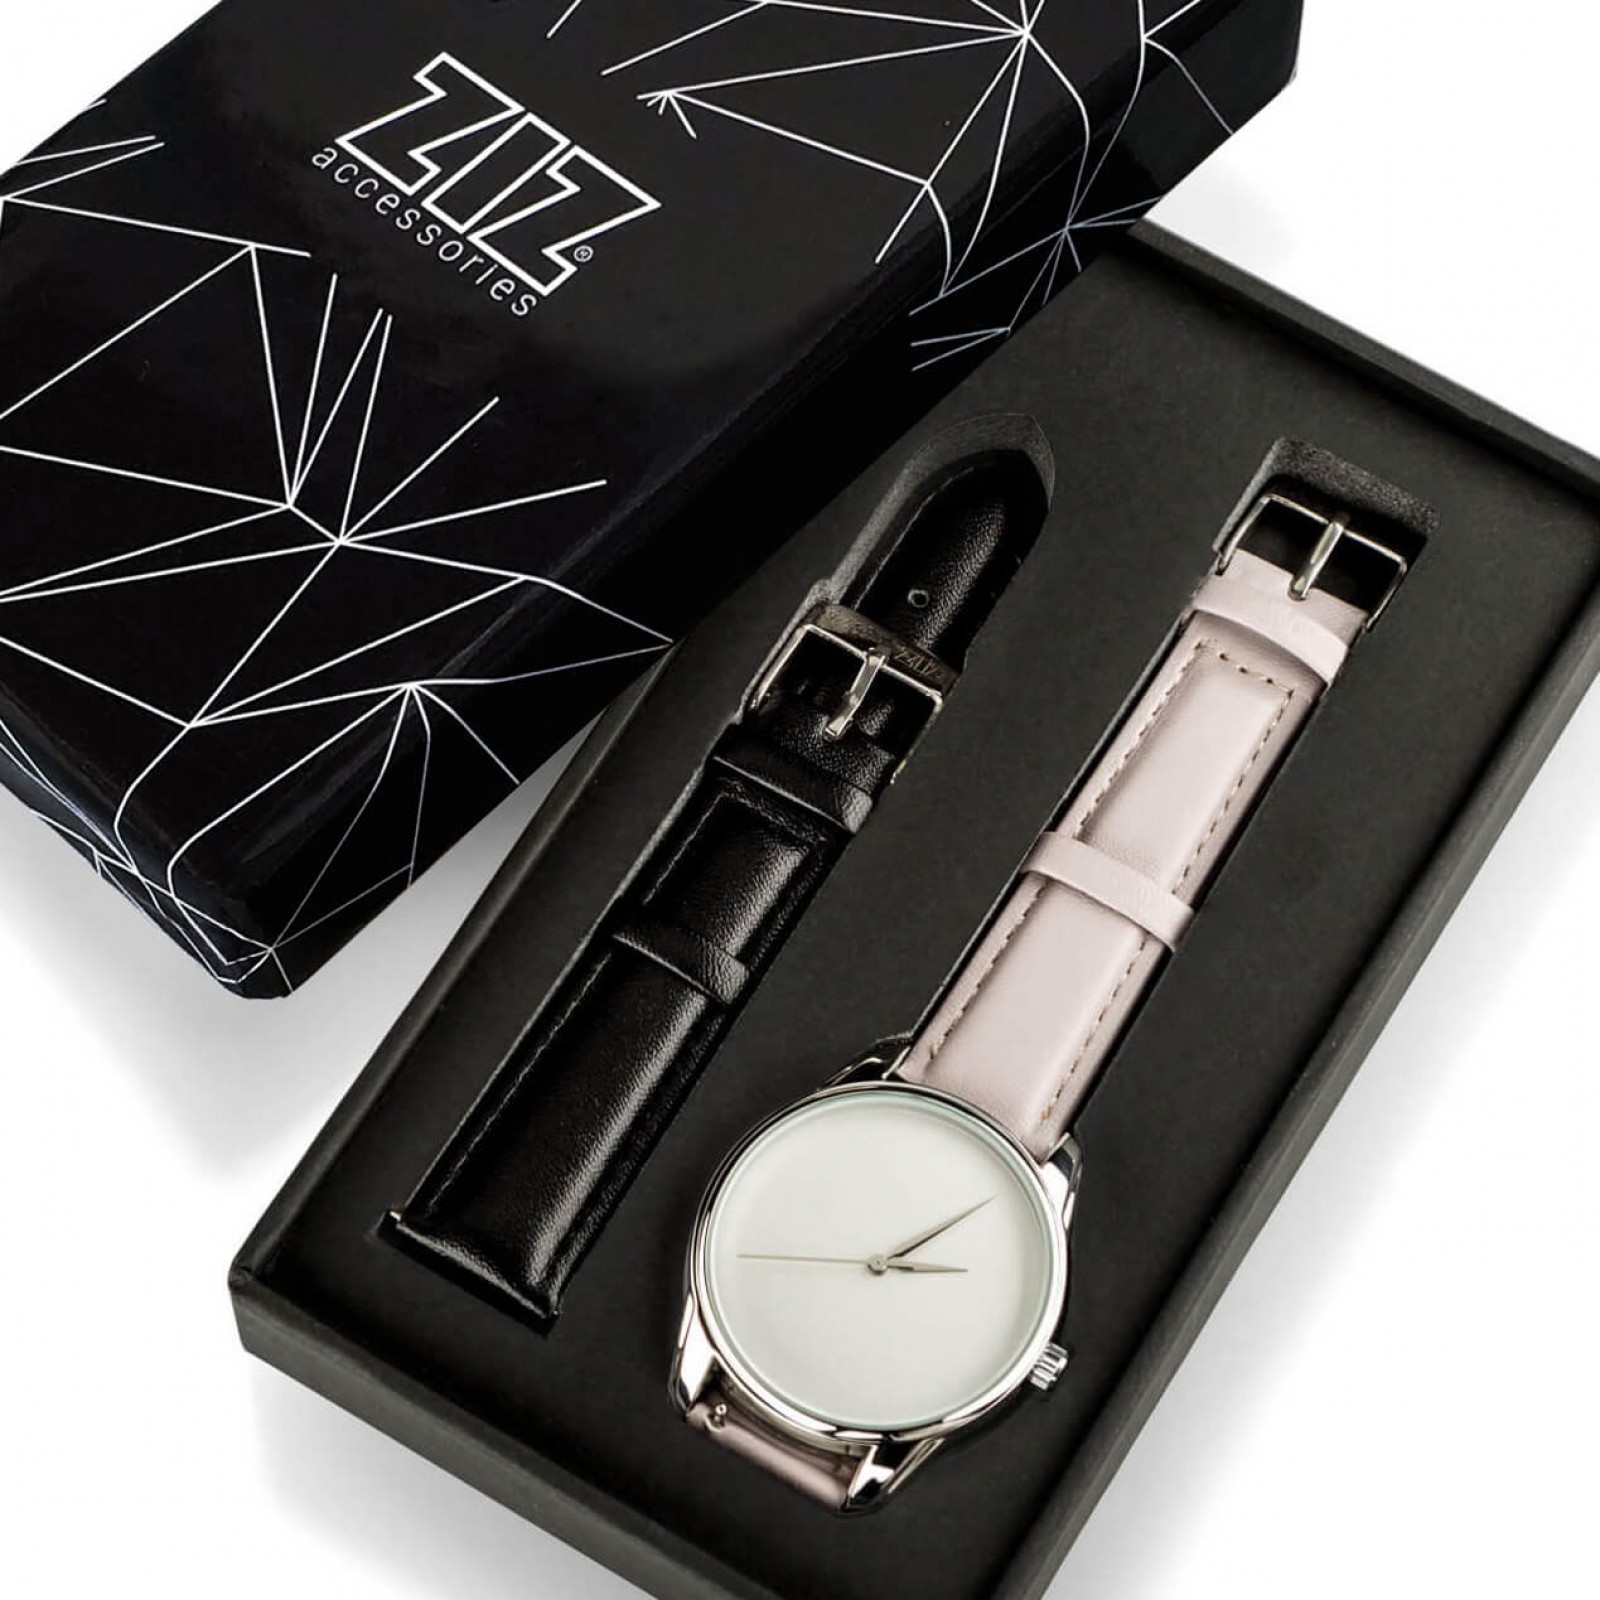 Годинник ZIZ Мінімалізм, ремінець світло-лавандовий, срібло і додатковий ремінець 142855